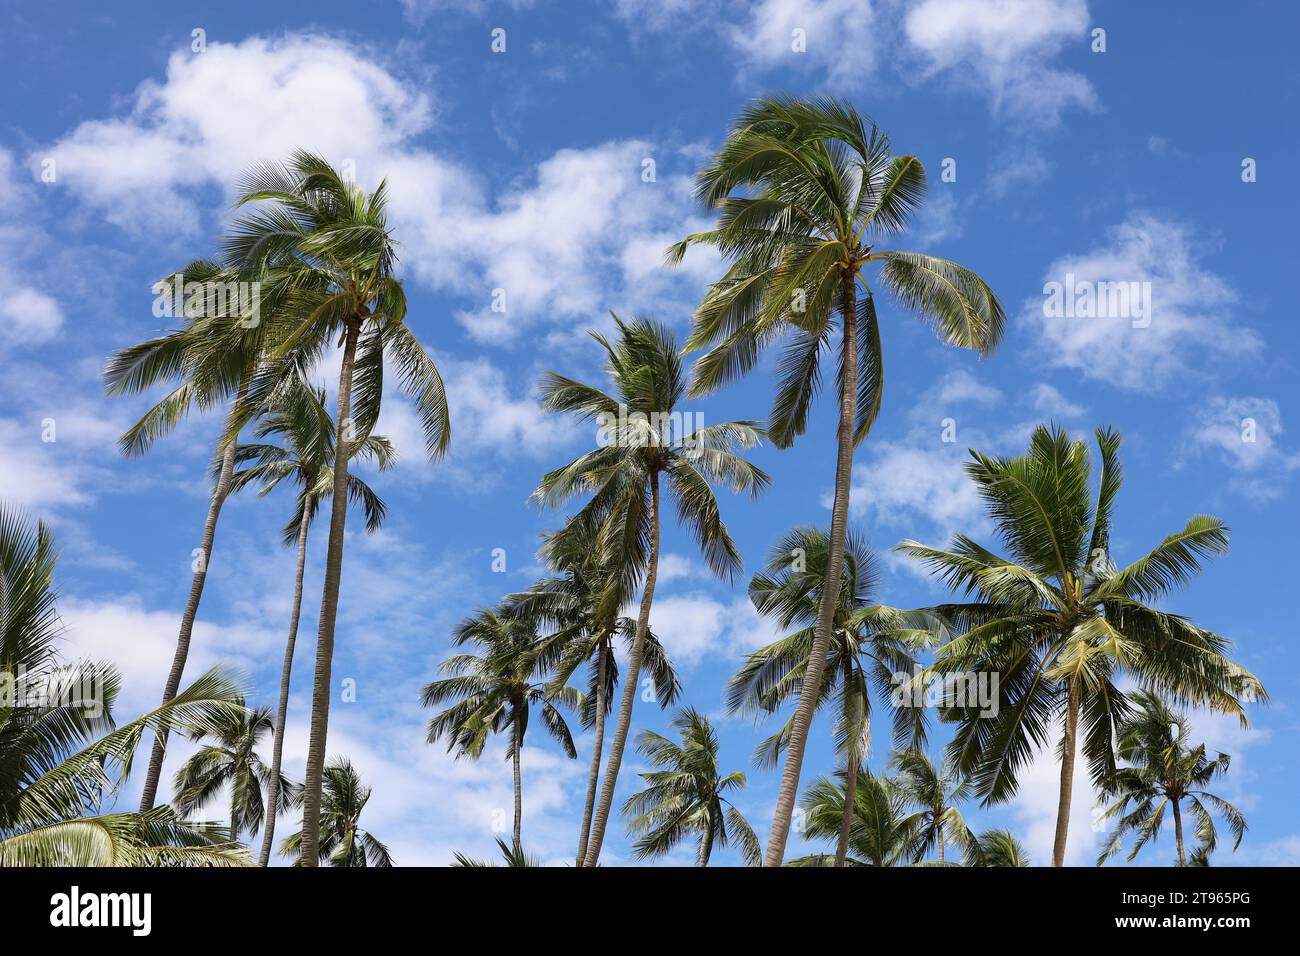 Kokospalmen auf blauem Himmel und weißen Wolken. Tropischer Strand, paradiesische Natur an sonnigen Tagen Stockfoto